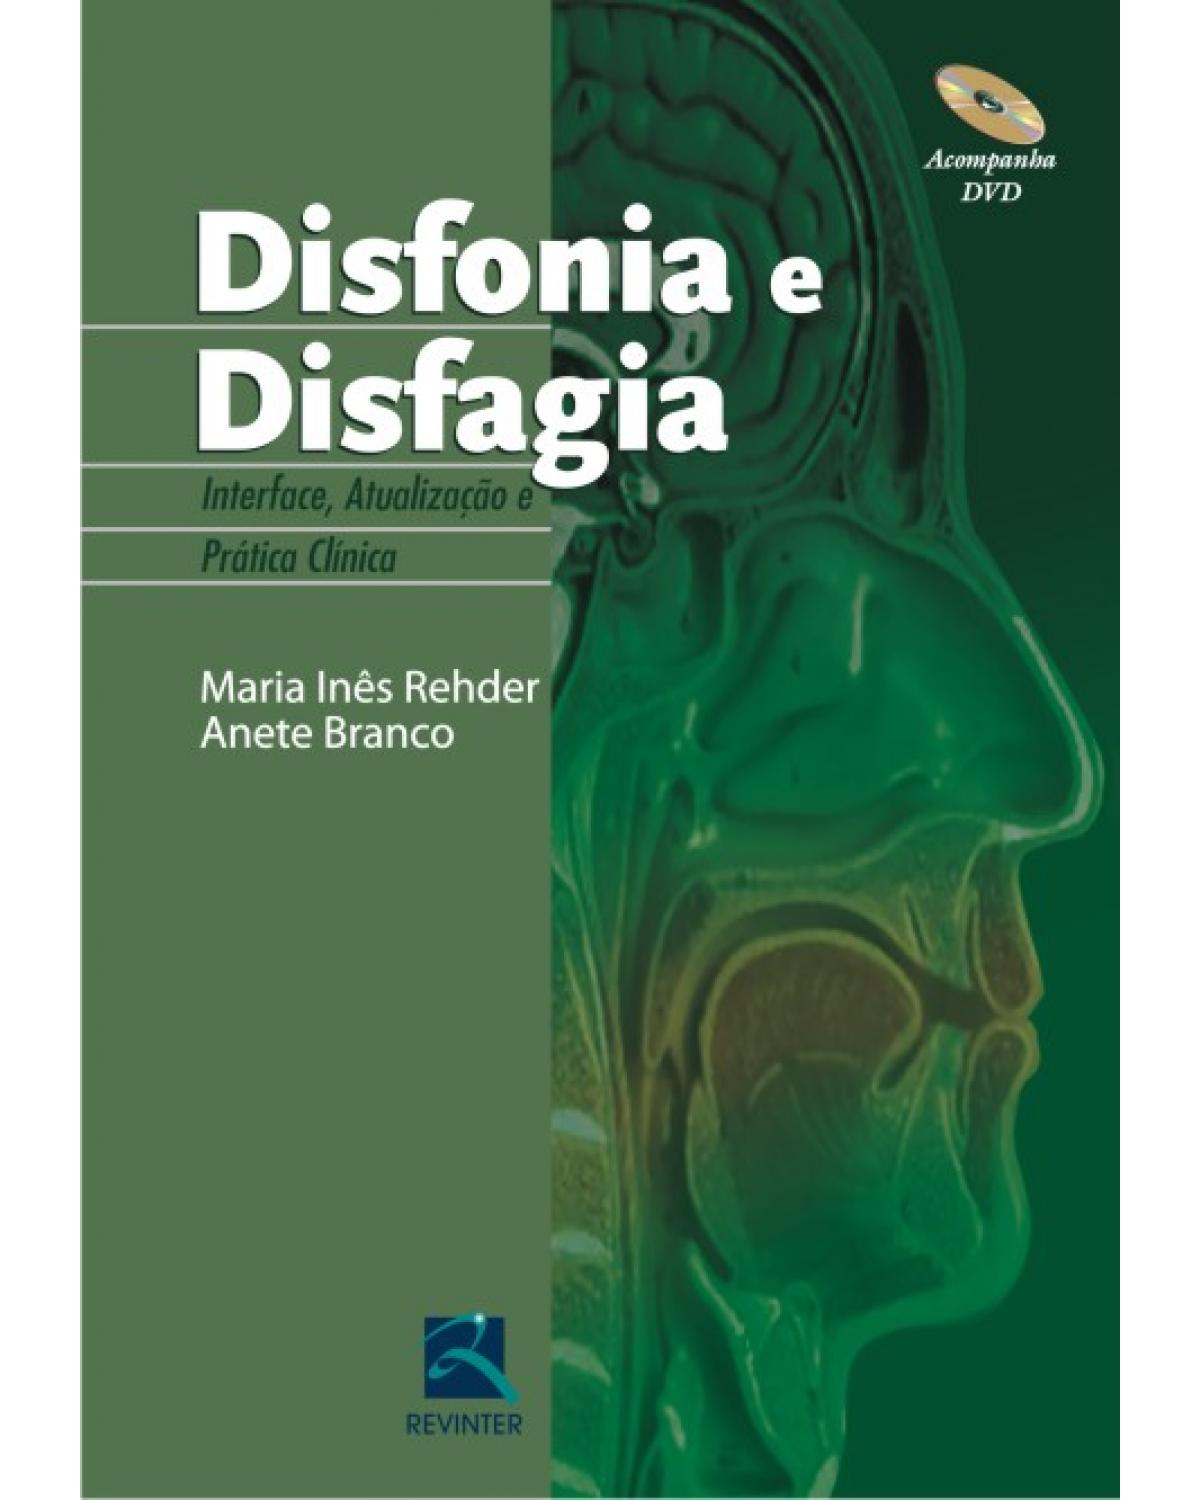 Disfonia e disfagia - interface, atualização e prática clínica - 1ª Edição | 2011